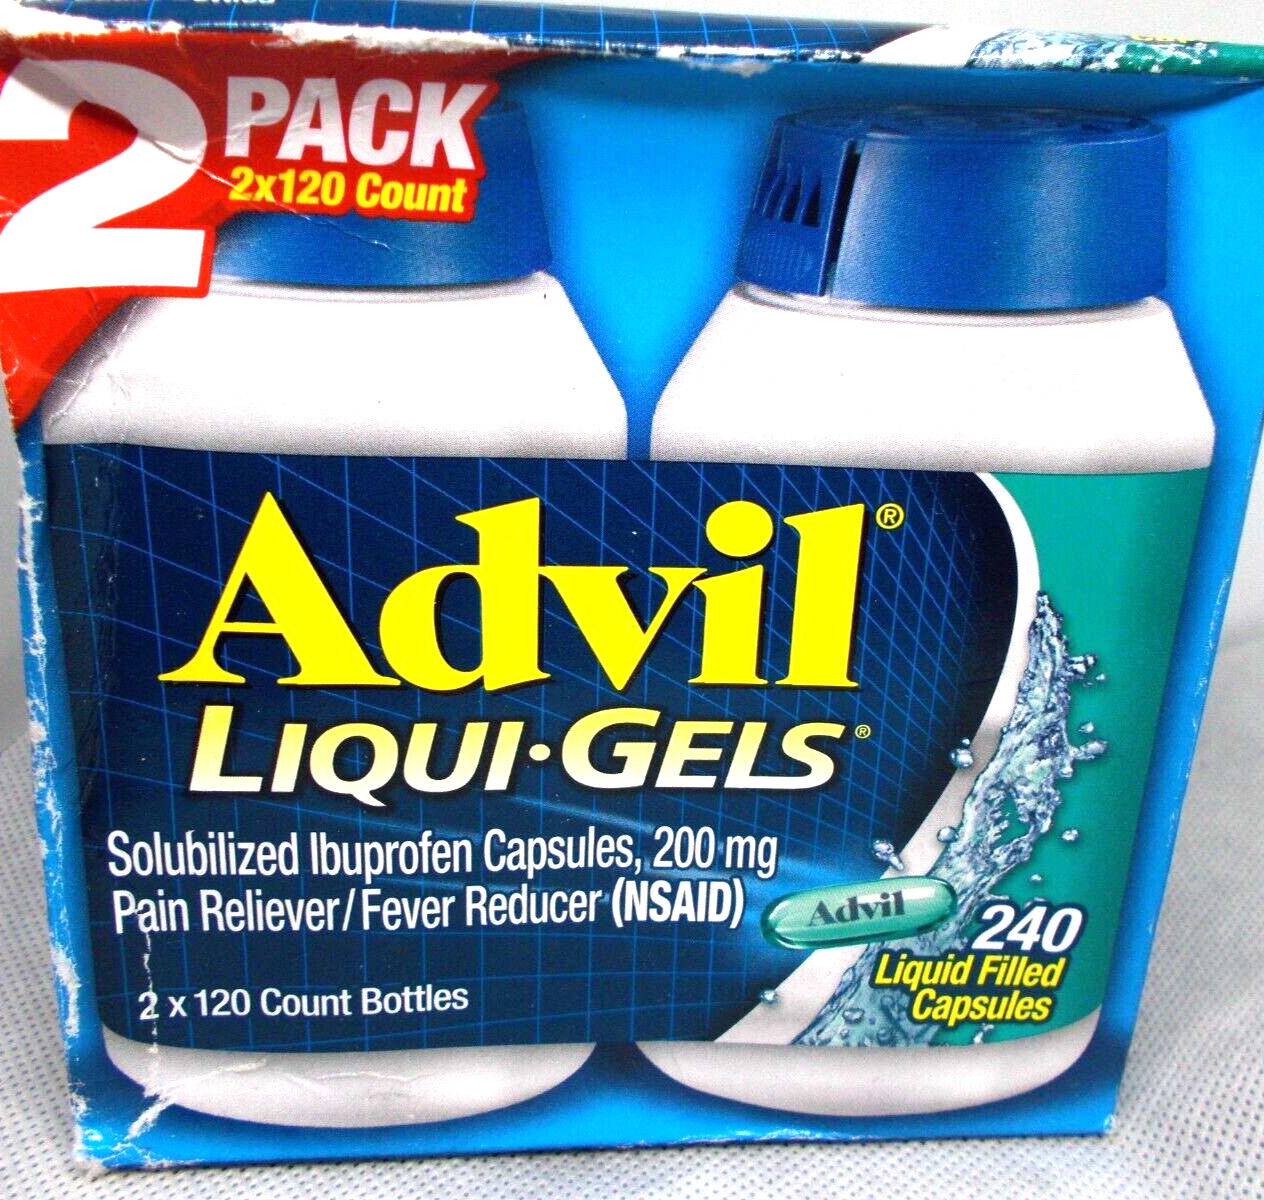 Advil liqui gels ibuprofen 200 mg liquid filled cap 240 e 9/25 sealed box damage